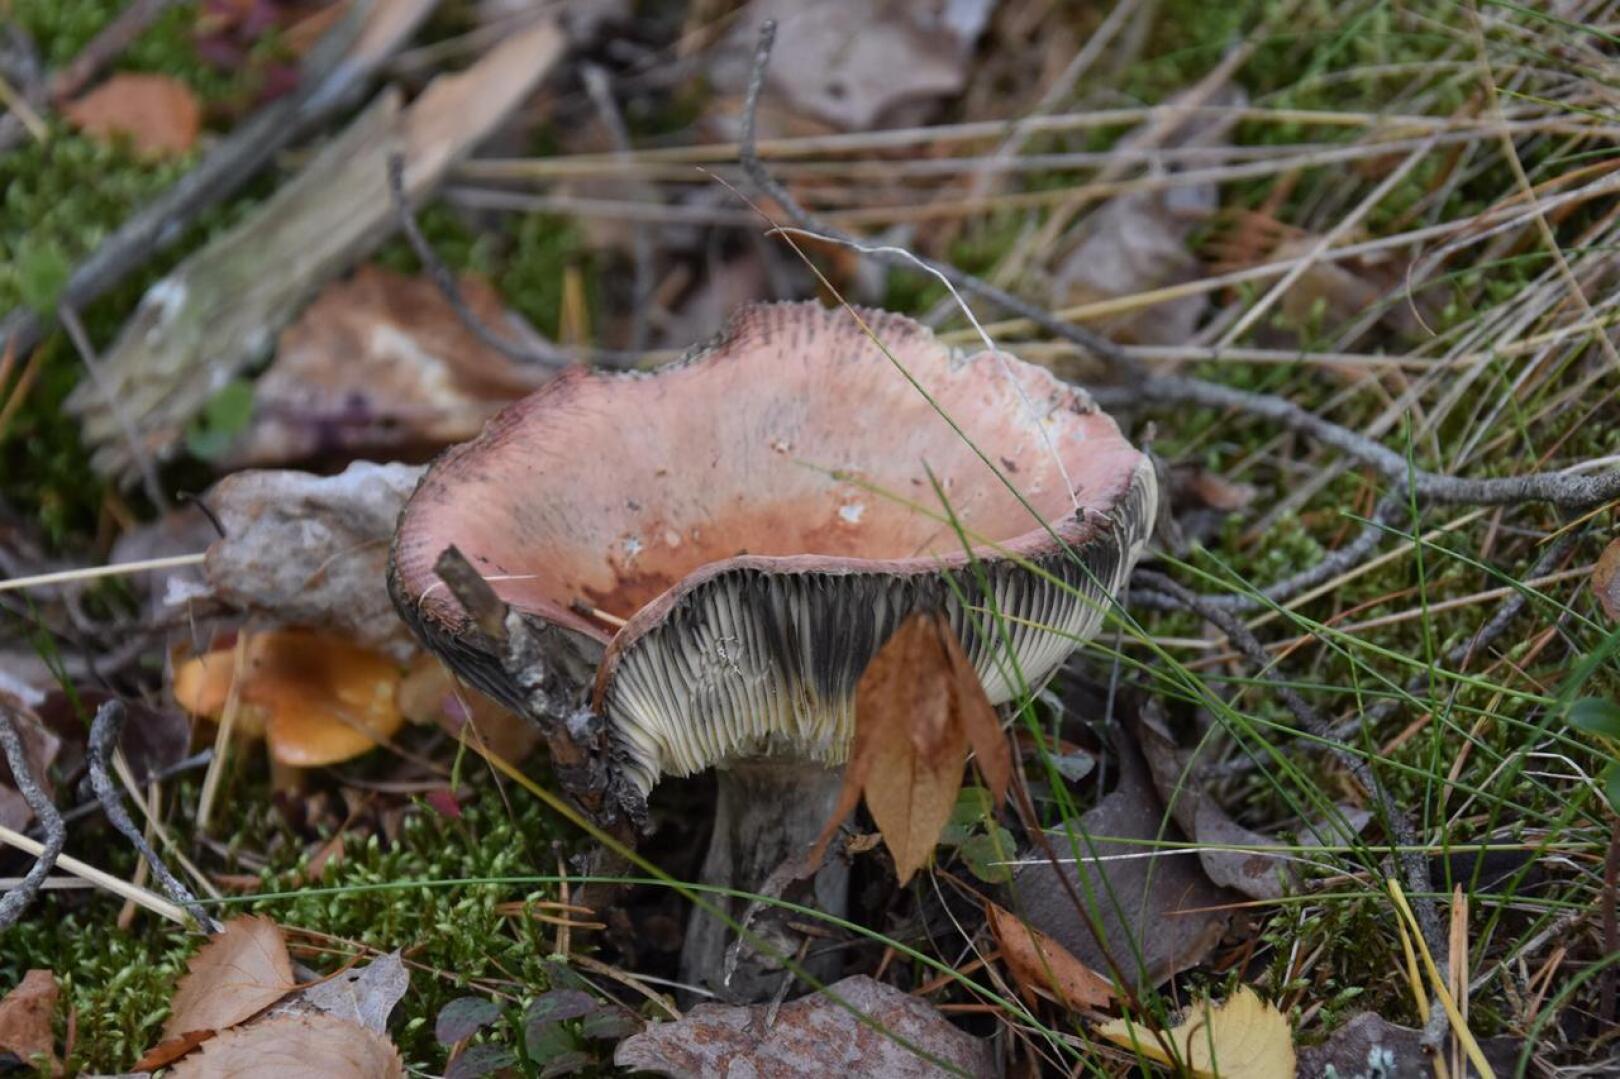 Syömäkelvoton. Kuvan sieni on kangashapero, joka vielä noin viikko sitten olisi ollut herkullinen ruokasieni. 